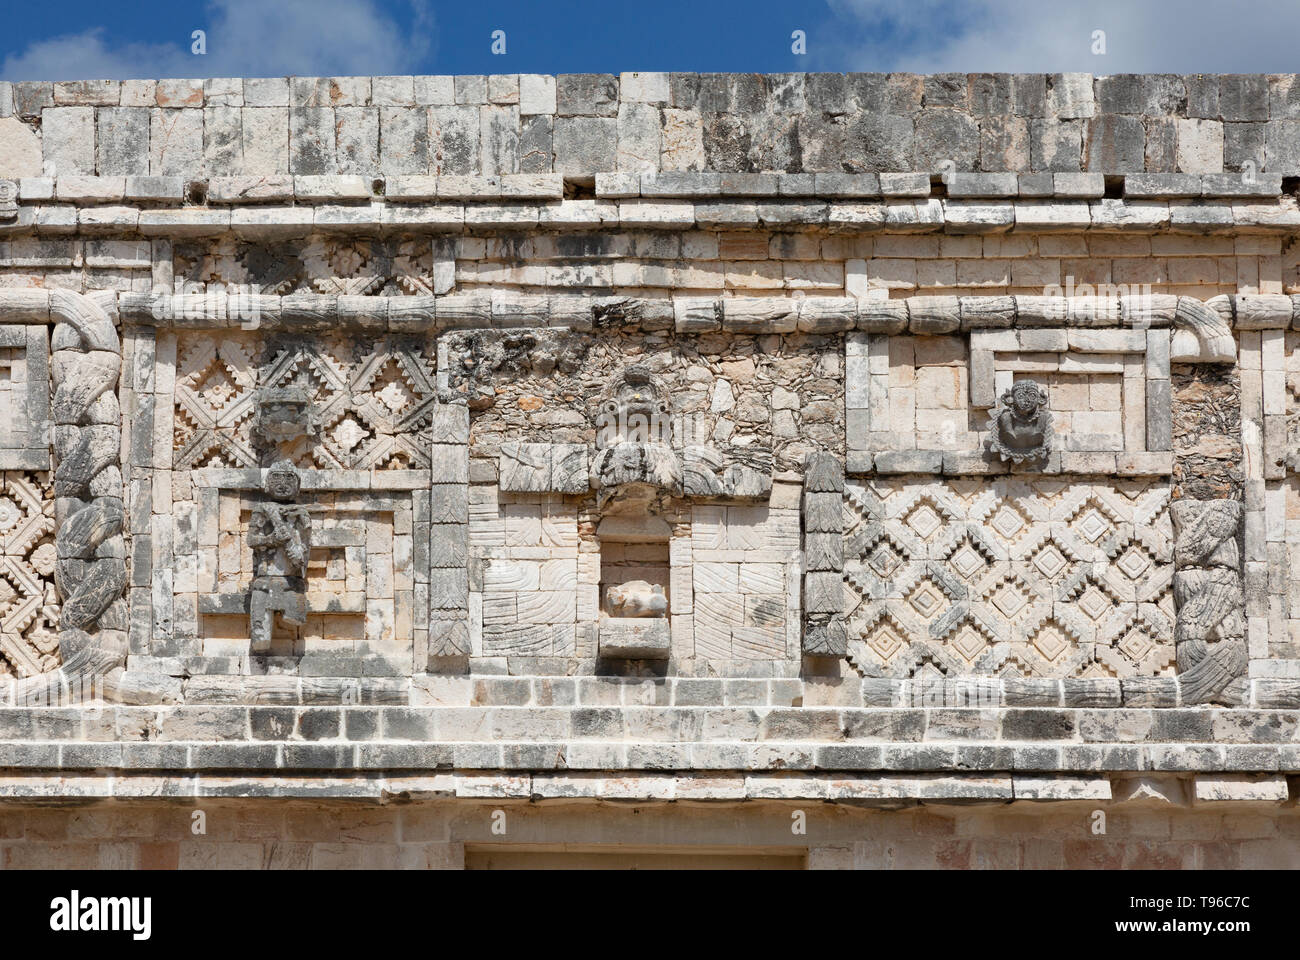 Uxmal Messico - sito UNESCO, rovine maya - dettaglio della tradizione Maya incisioni e sculture di animali, reticolo e simboli, Uxmal, Yucatan, Messico Foto Stock